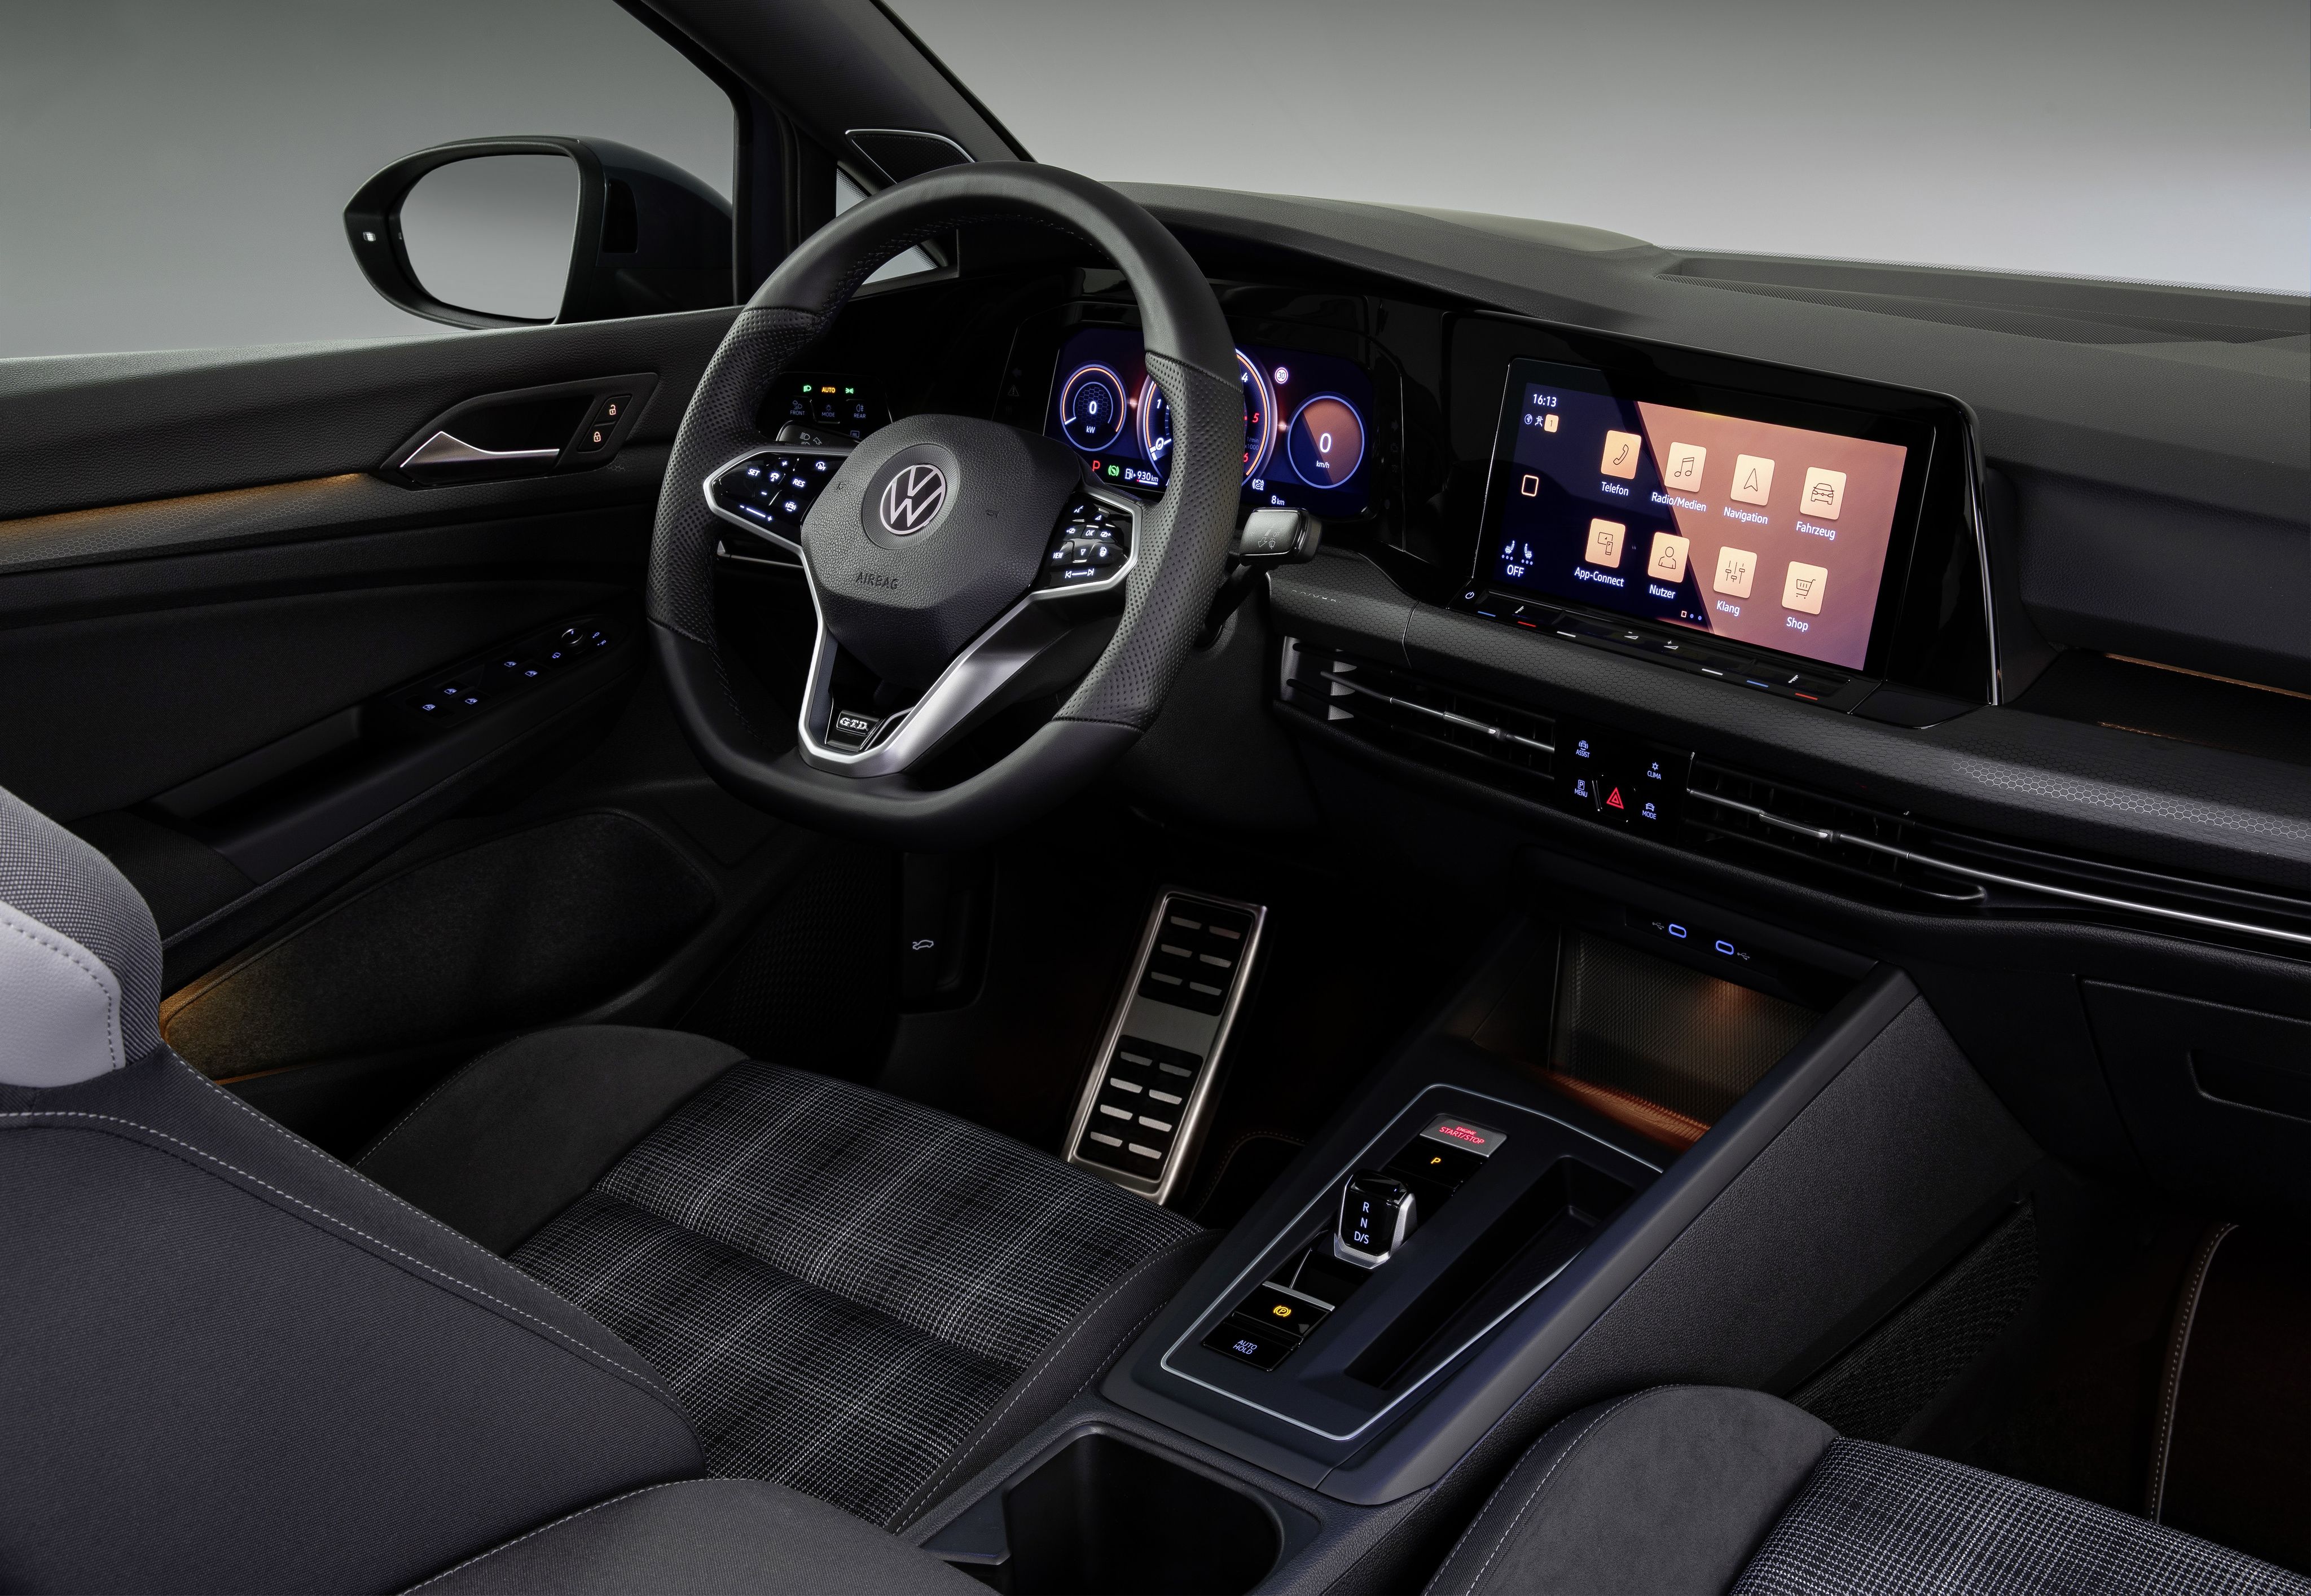 VW Is Still a Diesel of the Eighth-Gen Golf GTI